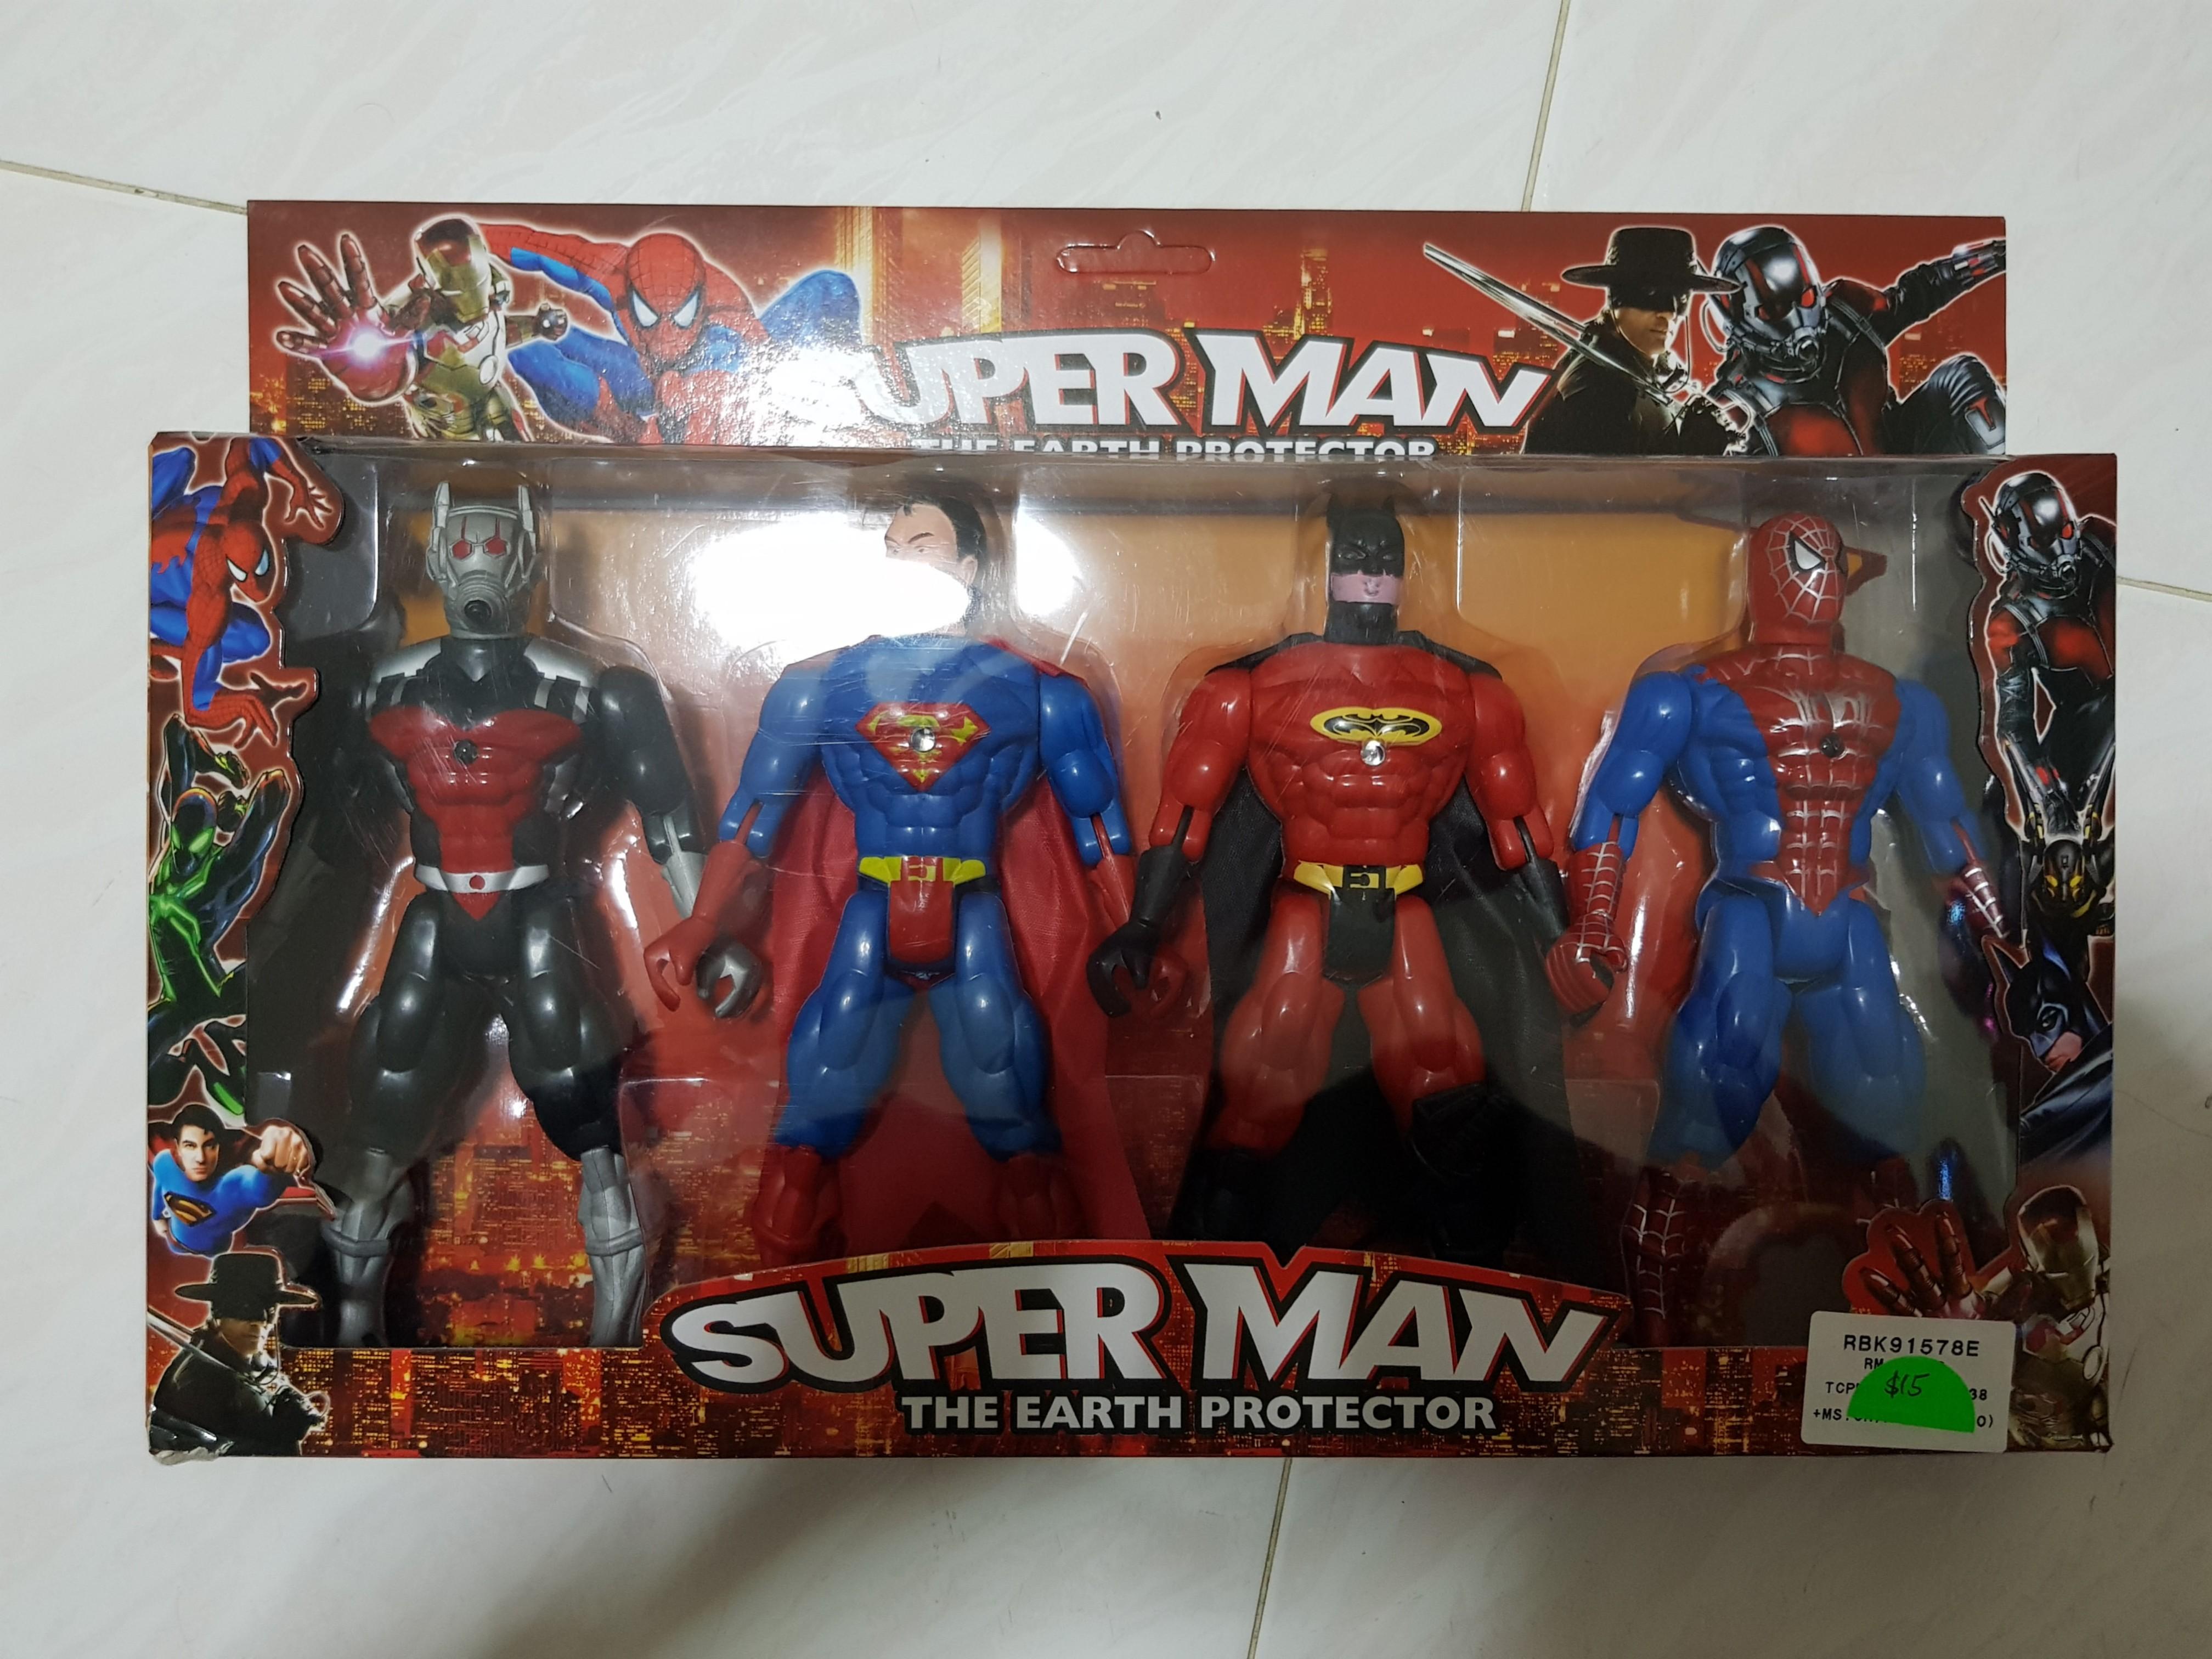 spiderman batman toys